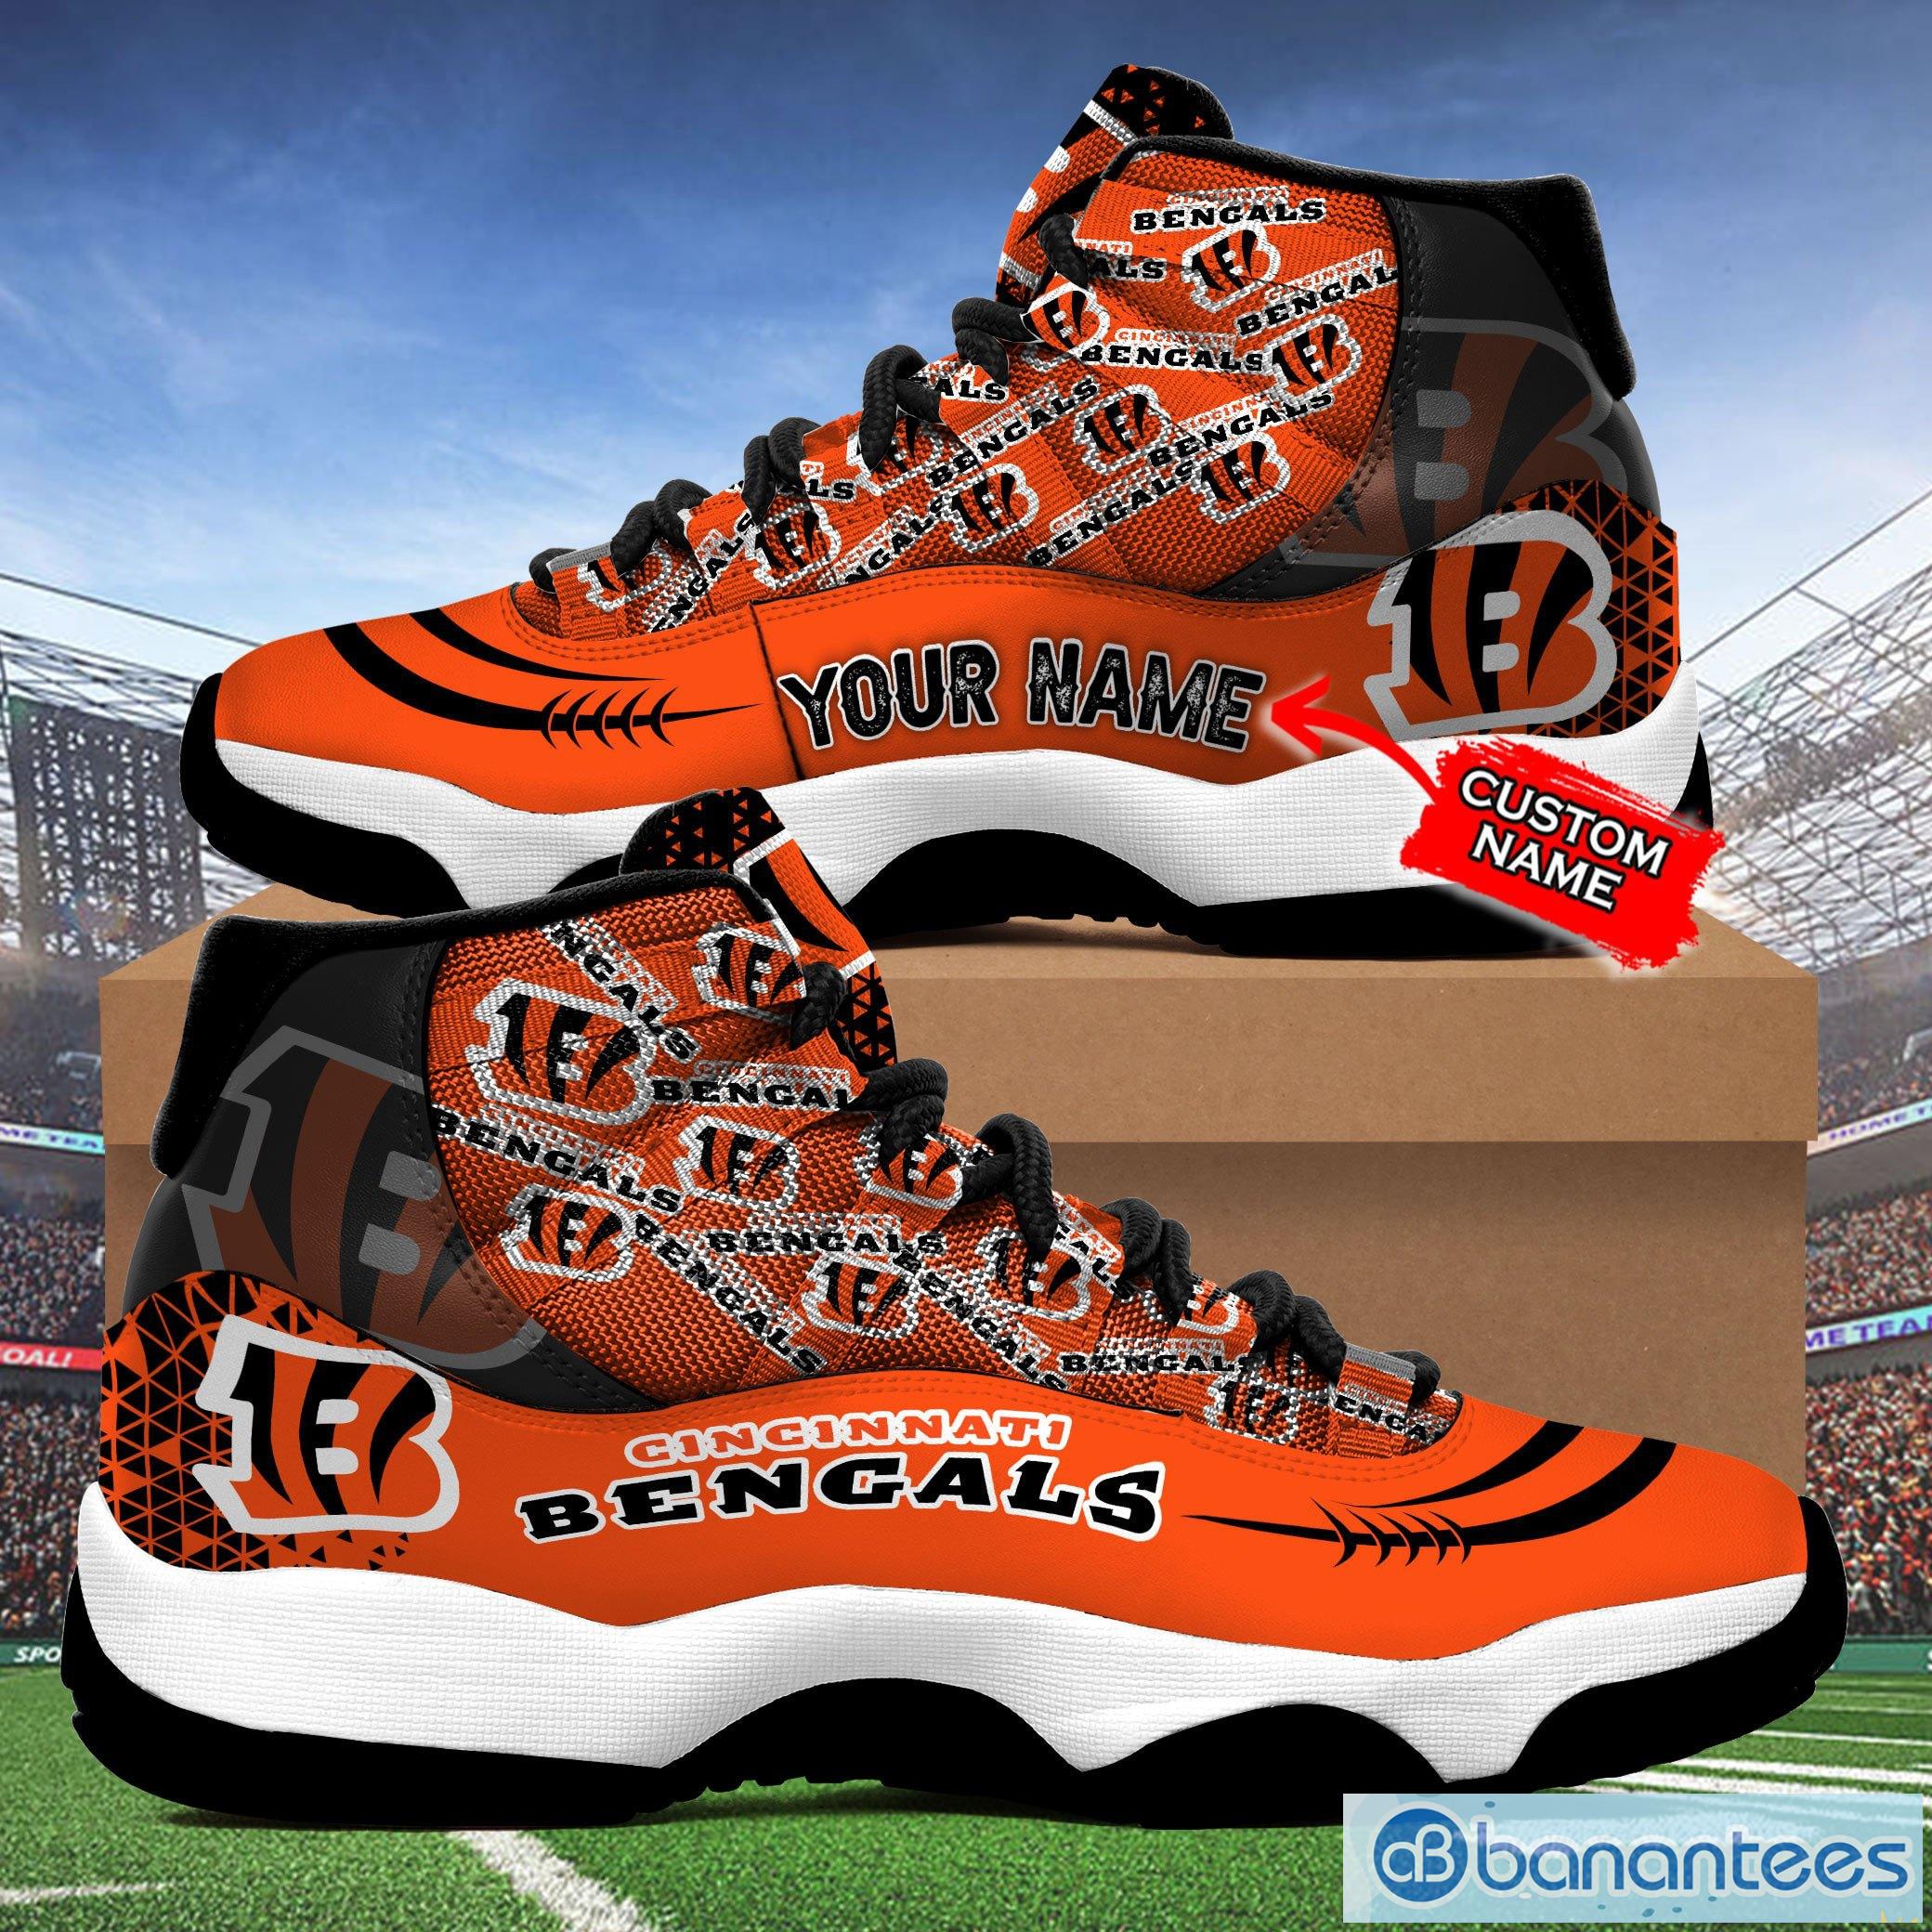 Cincinnati Bengals Air Jordan 13 Sneakers Shoes Custom Name Personalized  Gifts